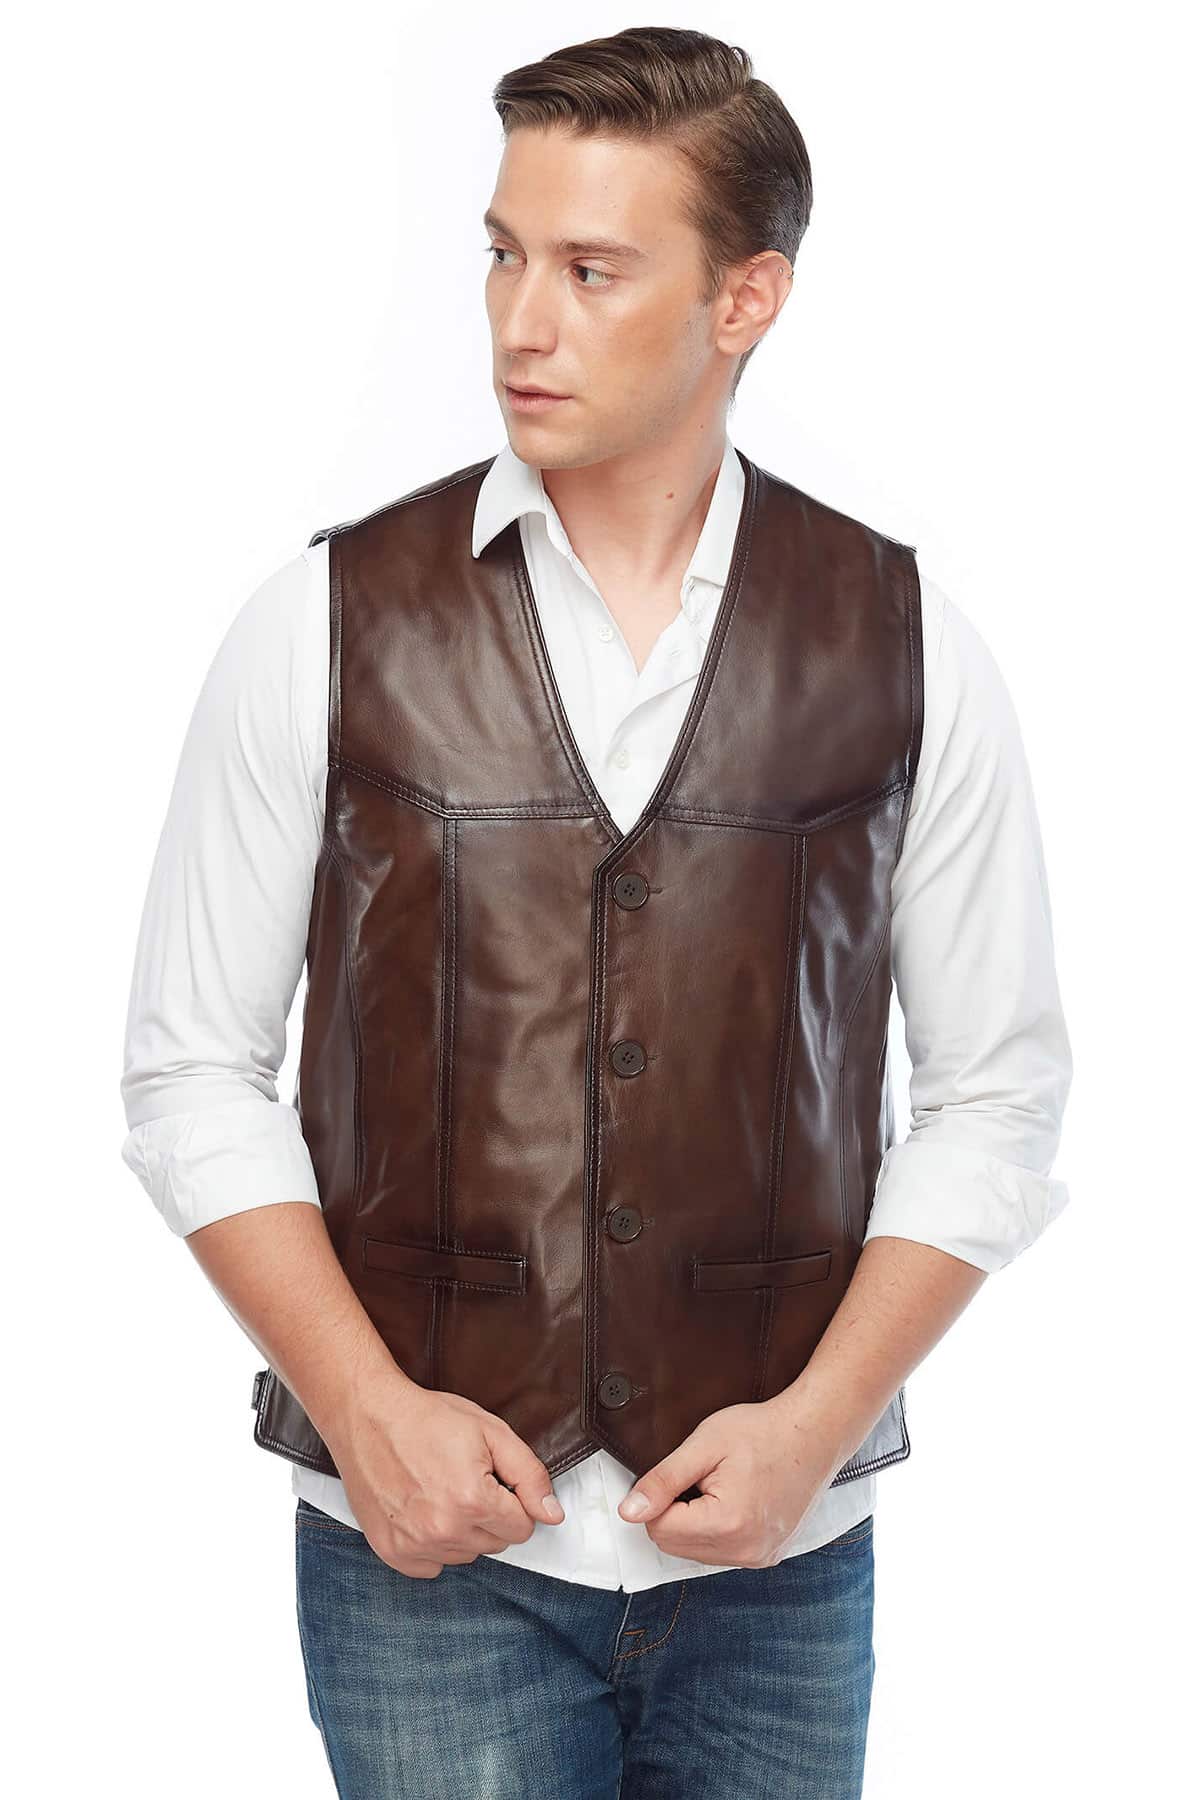 Oliver Goodwill Brown Men’s Leather Vest Coat Pose